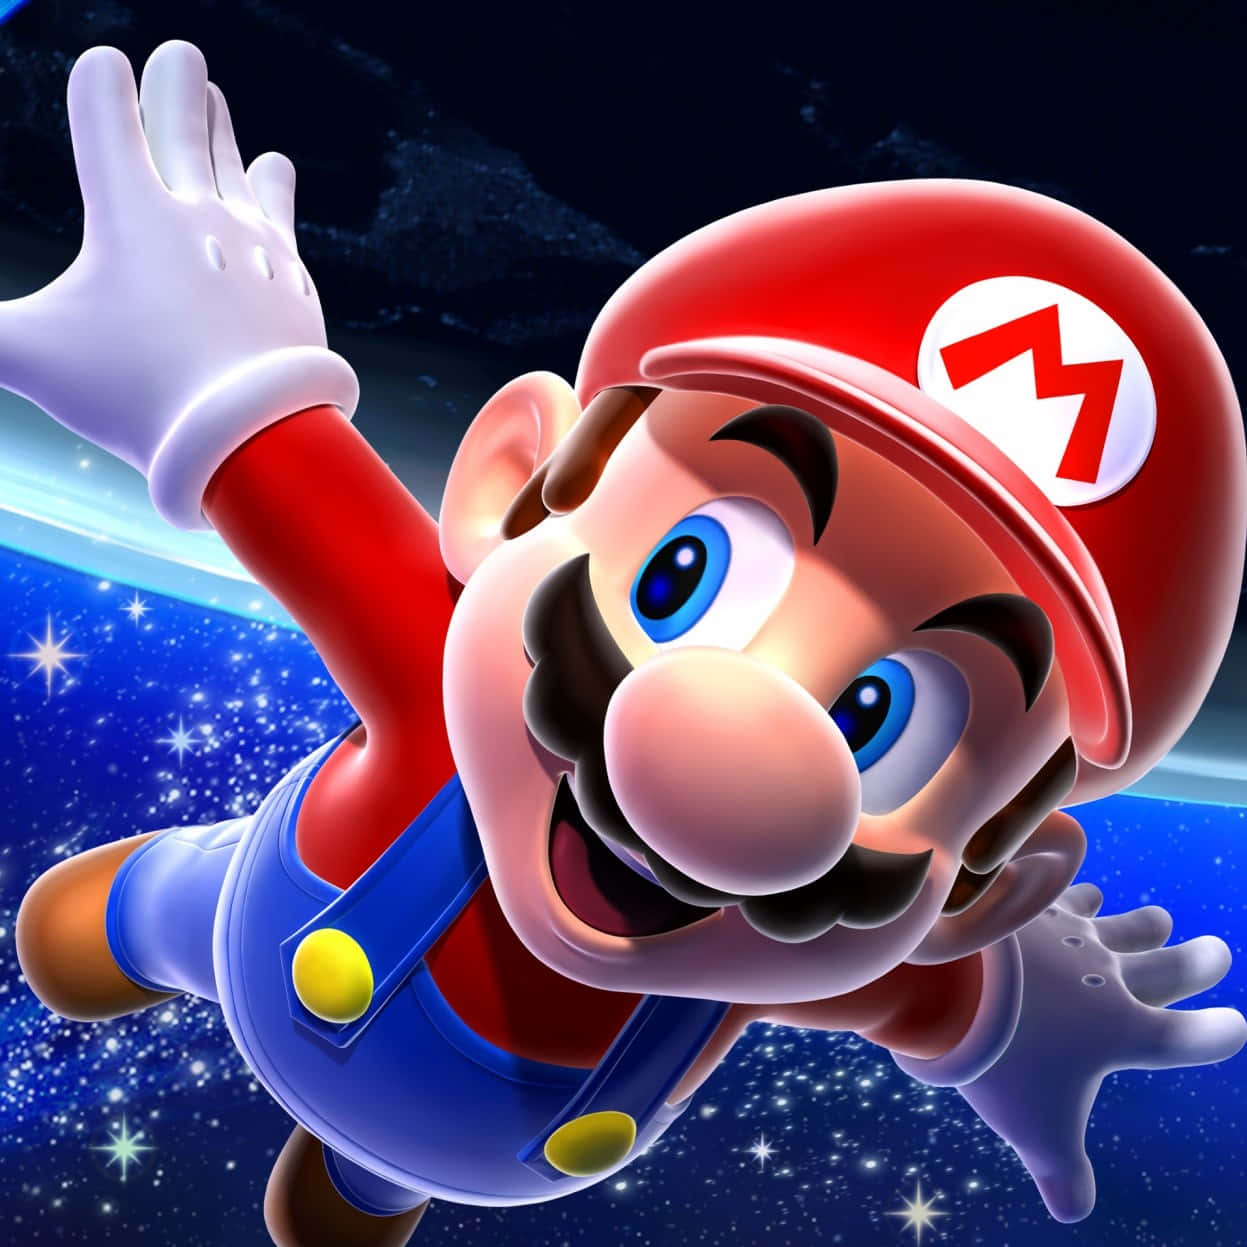 Entdeckeneue Welten Mit Mario In Super Mario Galaxy. Wallpaper